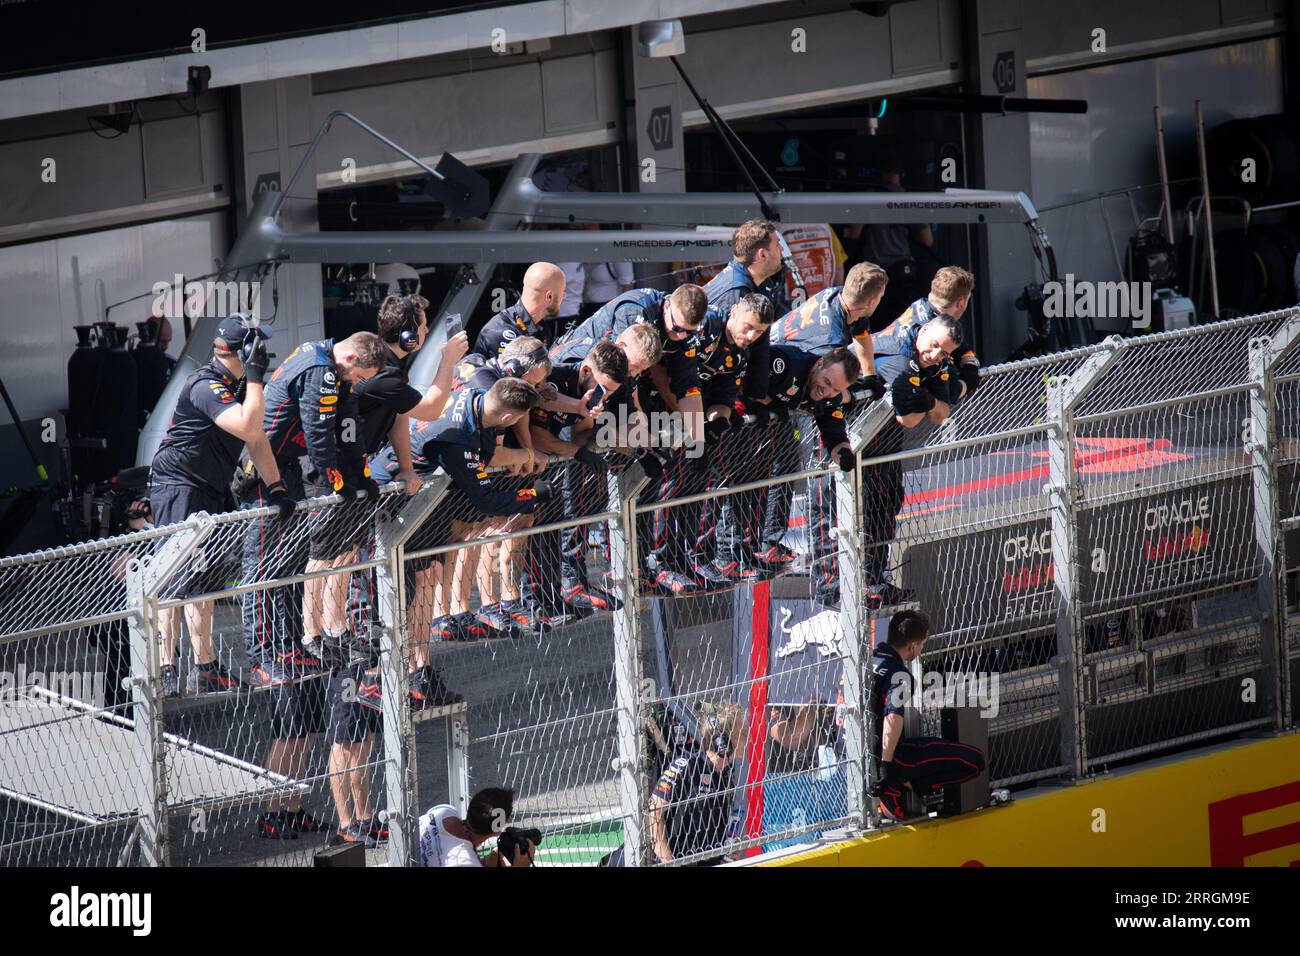 Red Bull pit crew in piedi sulle recinzioni del paddock, in attesa della vittoria di Max Verstappen al Gran Premio di Spagna. Foto Stock